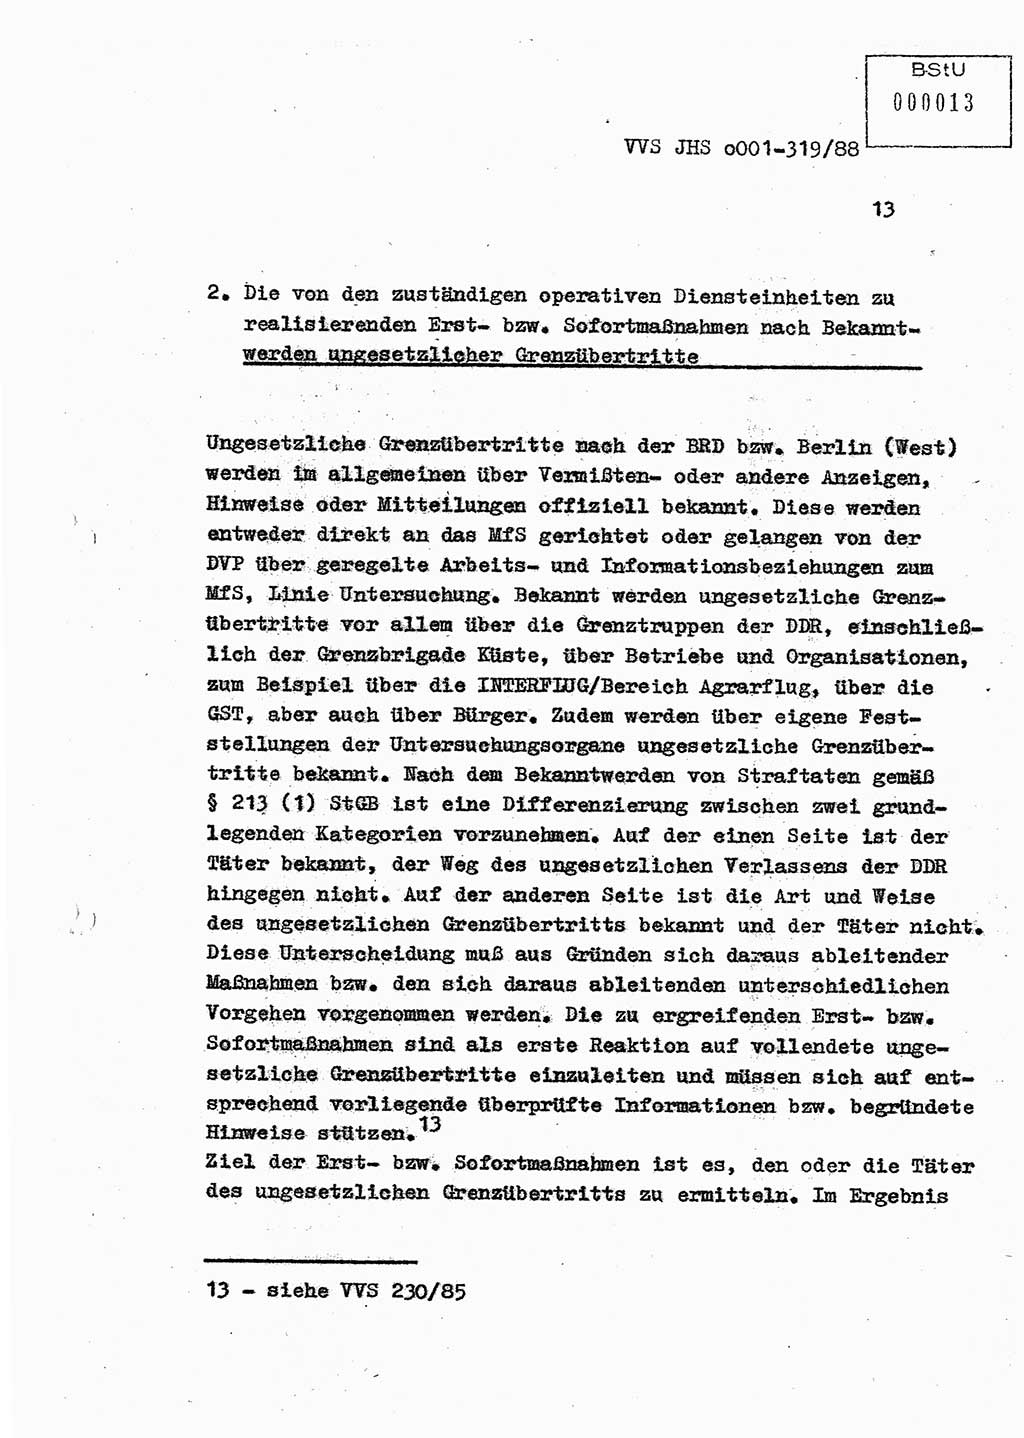 Diplomarbeit Offiziersschüler Holger Zirnstein (HA Ⅸ/9), Ministerium für Staatssicherheit (MfS) [Deutsche Demokratische Republik (DDR)], Juristische Hochschule (JHS), Vertrauliche Verschlußsache (VVS) o001-319/88, Potsdam 1988, Blatt 13 (Dipl.-Arb. MfS DDR JHS VVS o001-319/88 1988, Bl. 13)